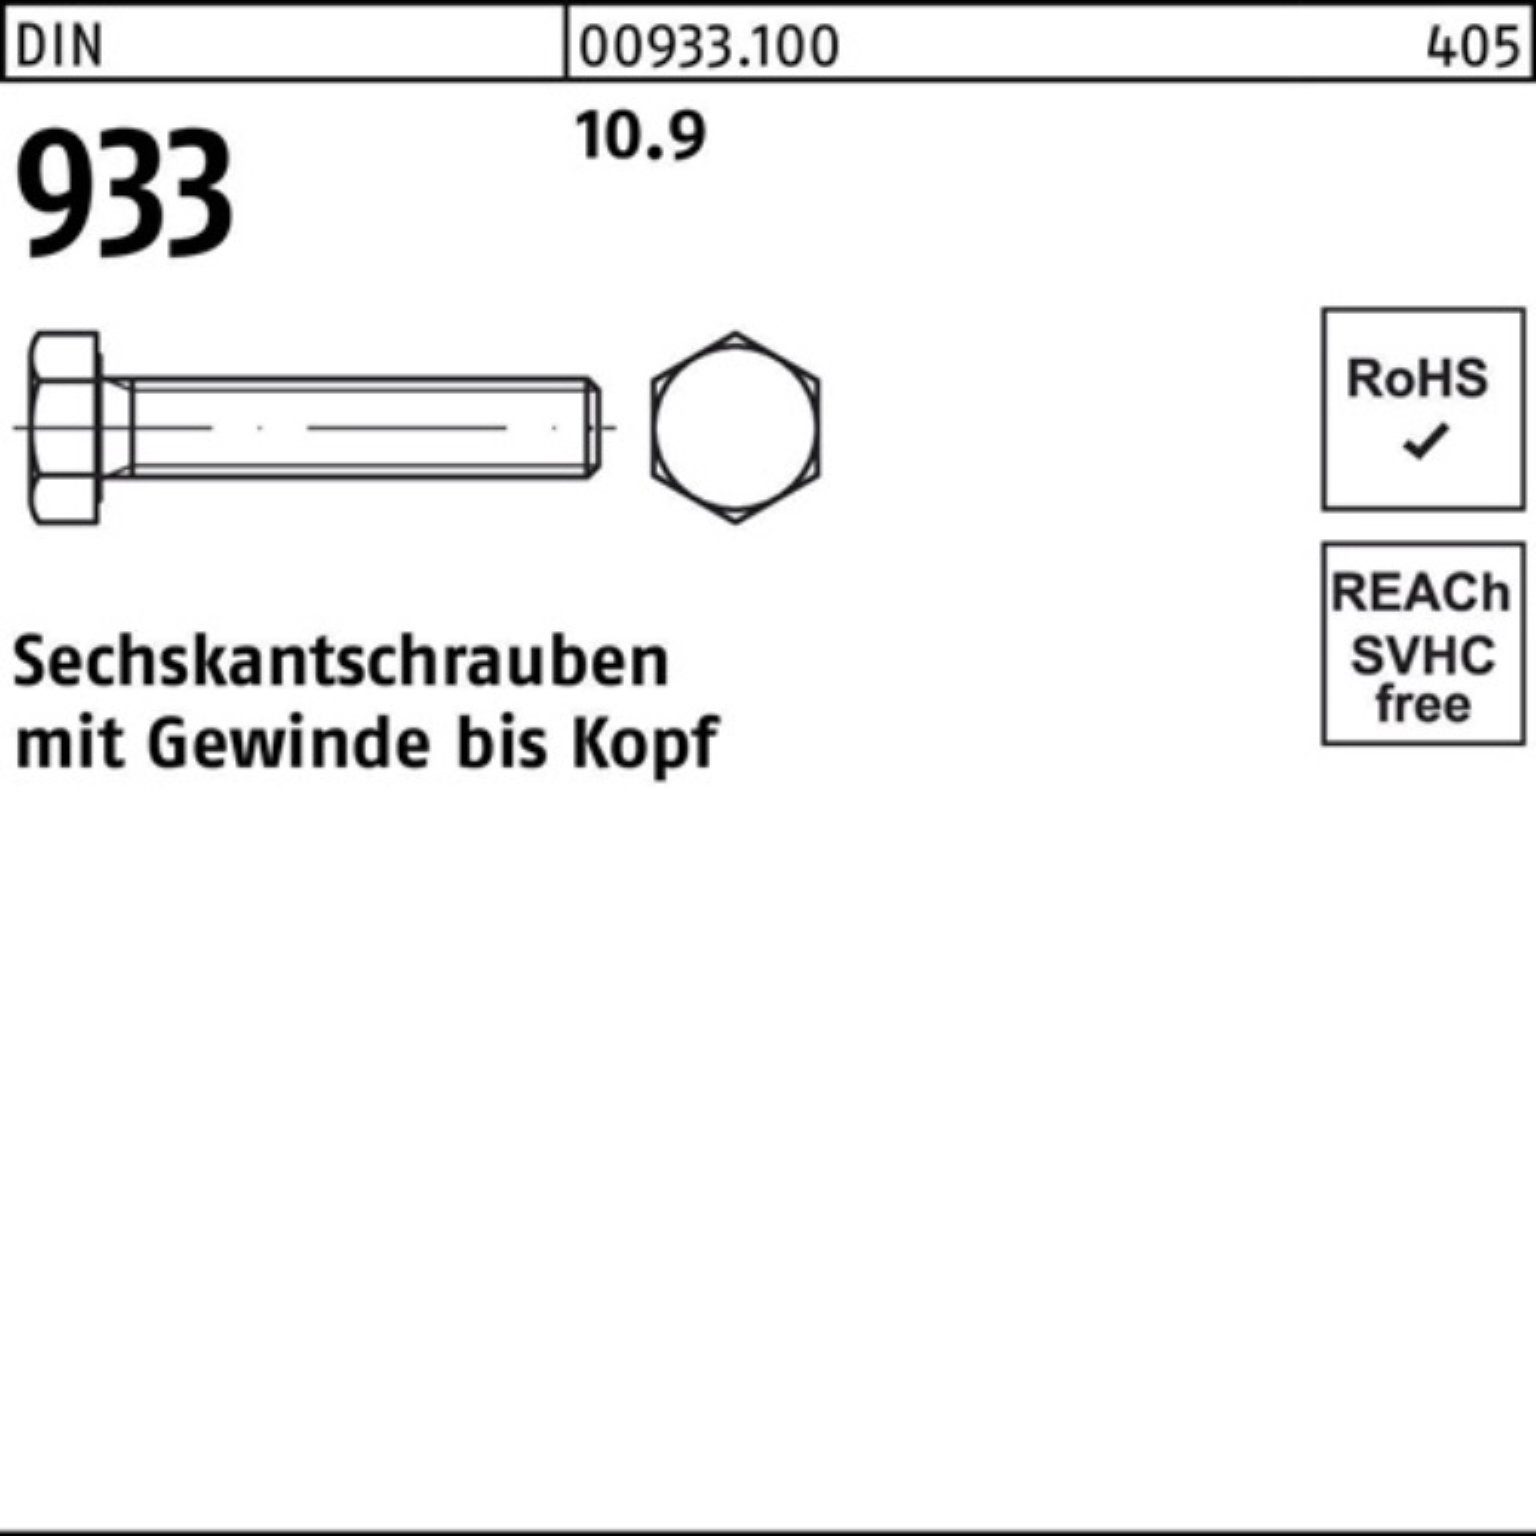 Reyher Sechskantschraube 500er Stück 25 DIN DIN M5x 500 10.9 Sechskantschraube VG Pack 933 933